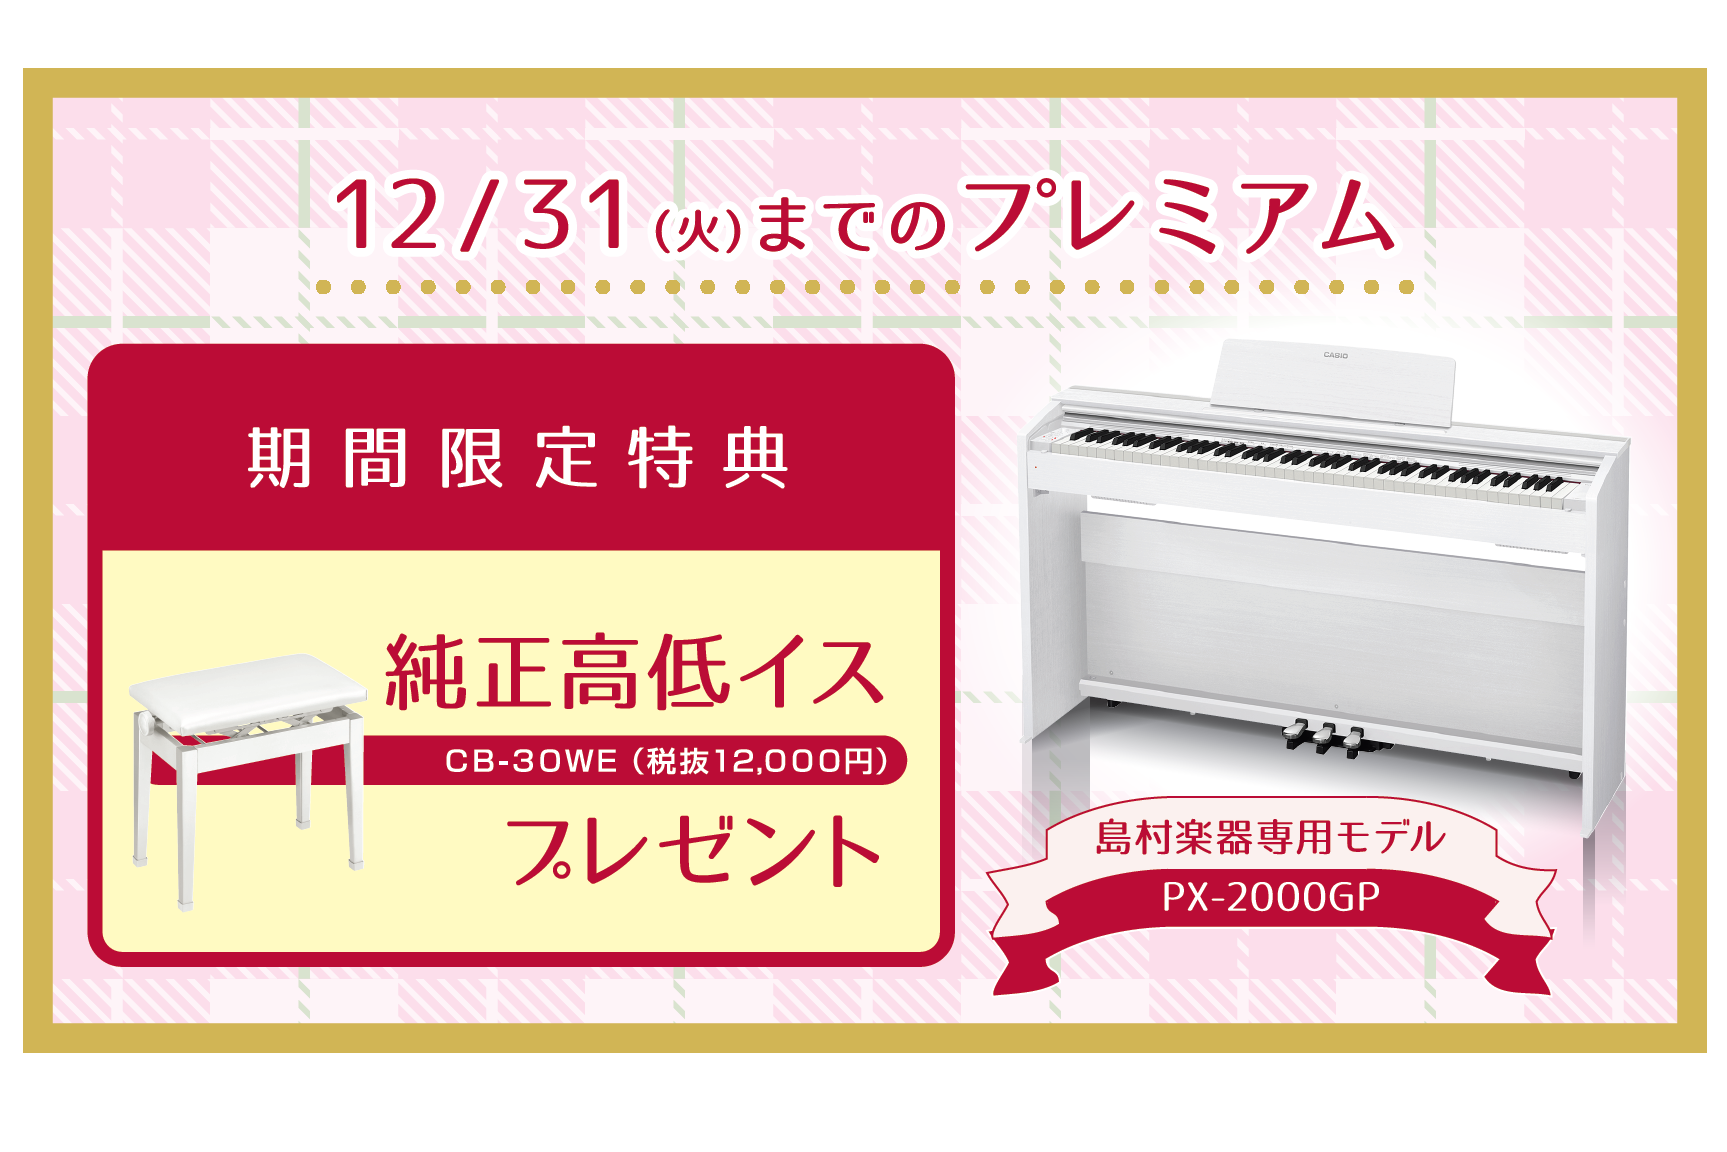 【電子ピアノ】CASIO PX2000GP 期間限定 – 純正高低イスプレゼント 2019年12月31日まで